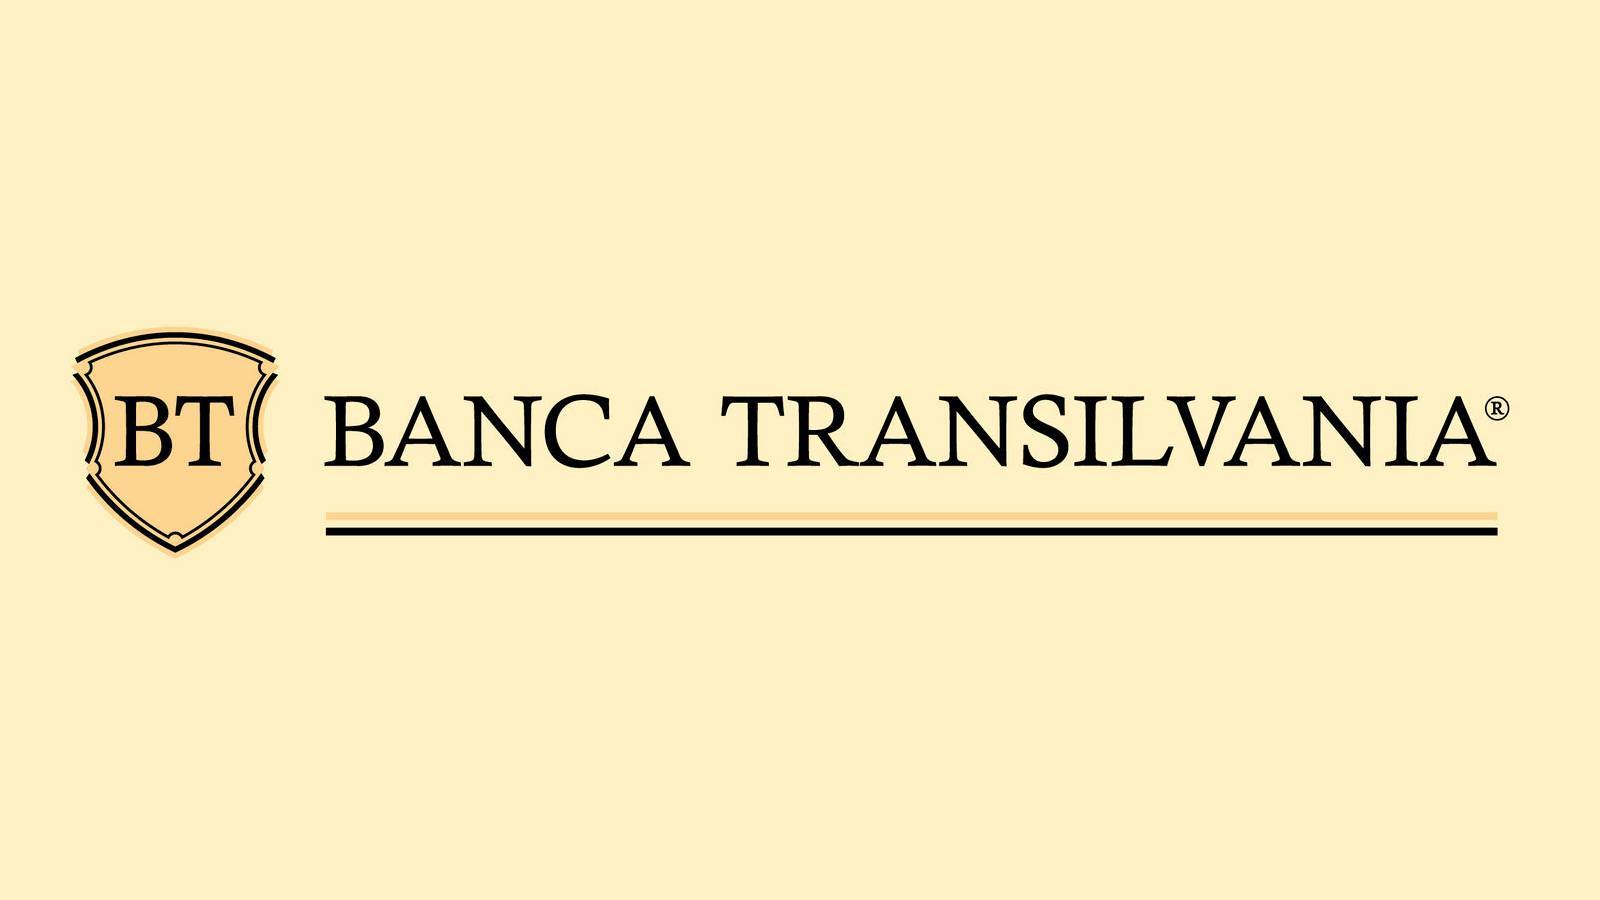 BANCA Transilvania Información ÚLTIMO MOMENTO GRATIS Clientes